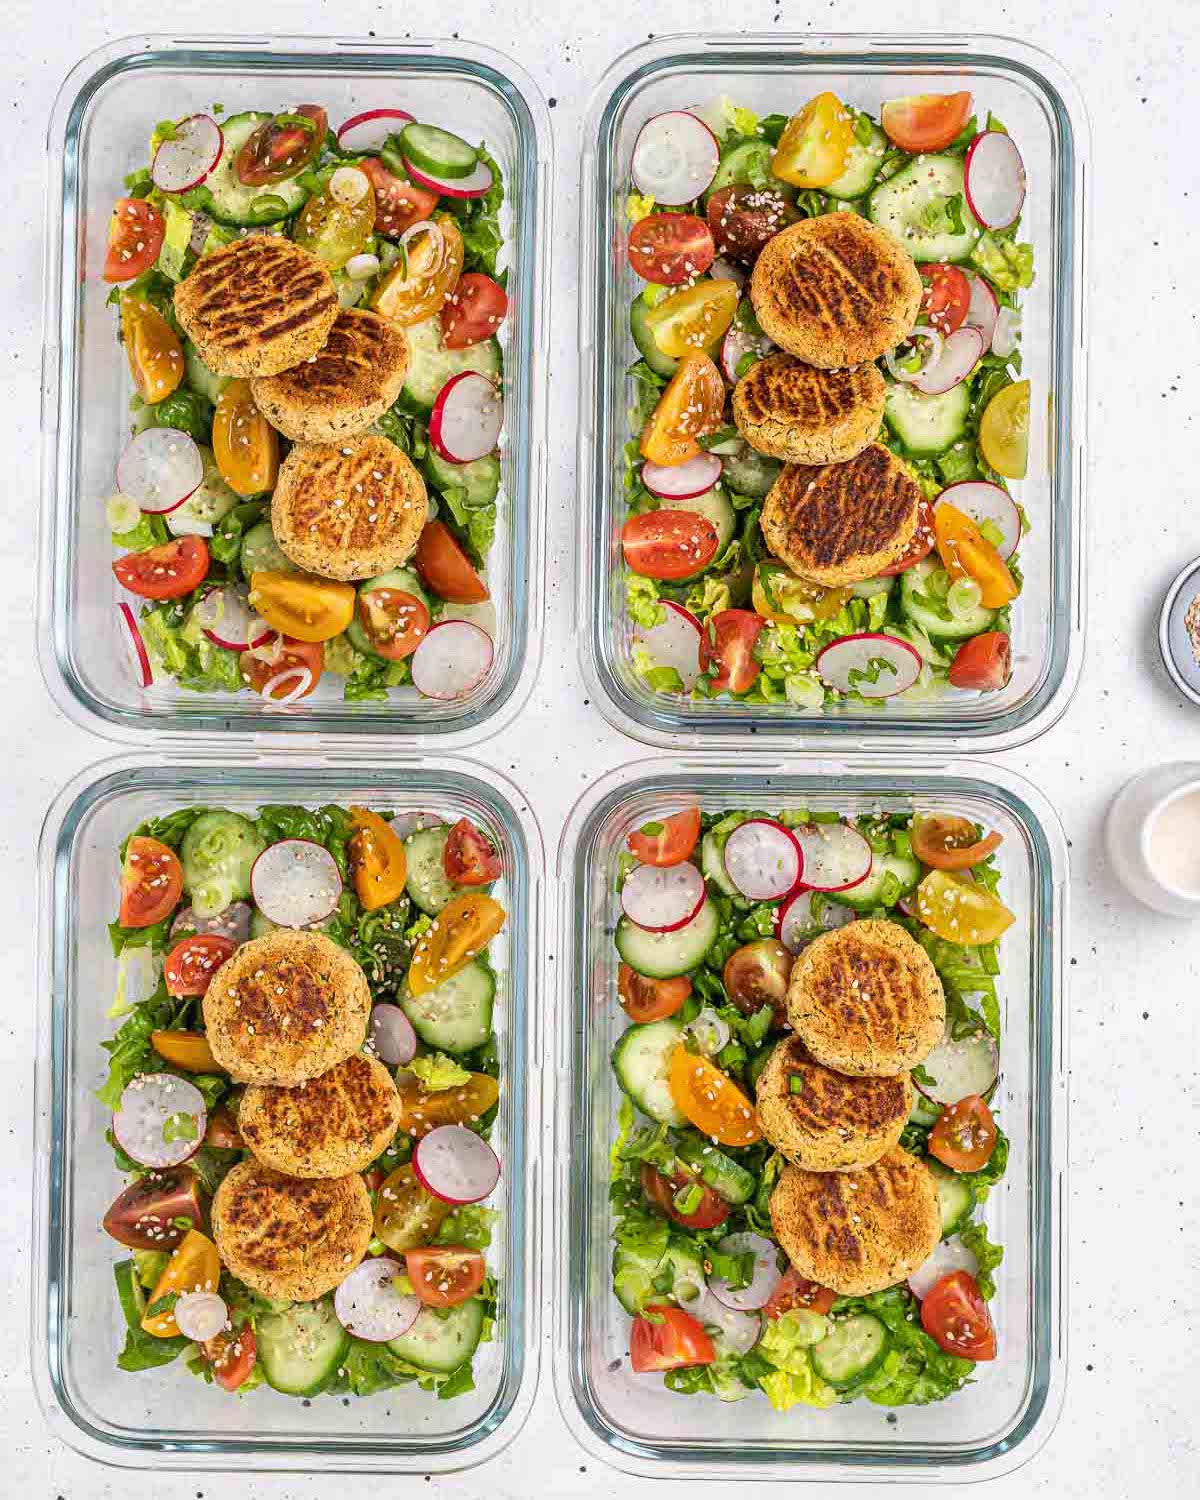 https://cleanfoodcrush.com/wp-content/uploads/2023/05/Falafel-Salad-Meal-Prep-Bowls-Step-6.jpg